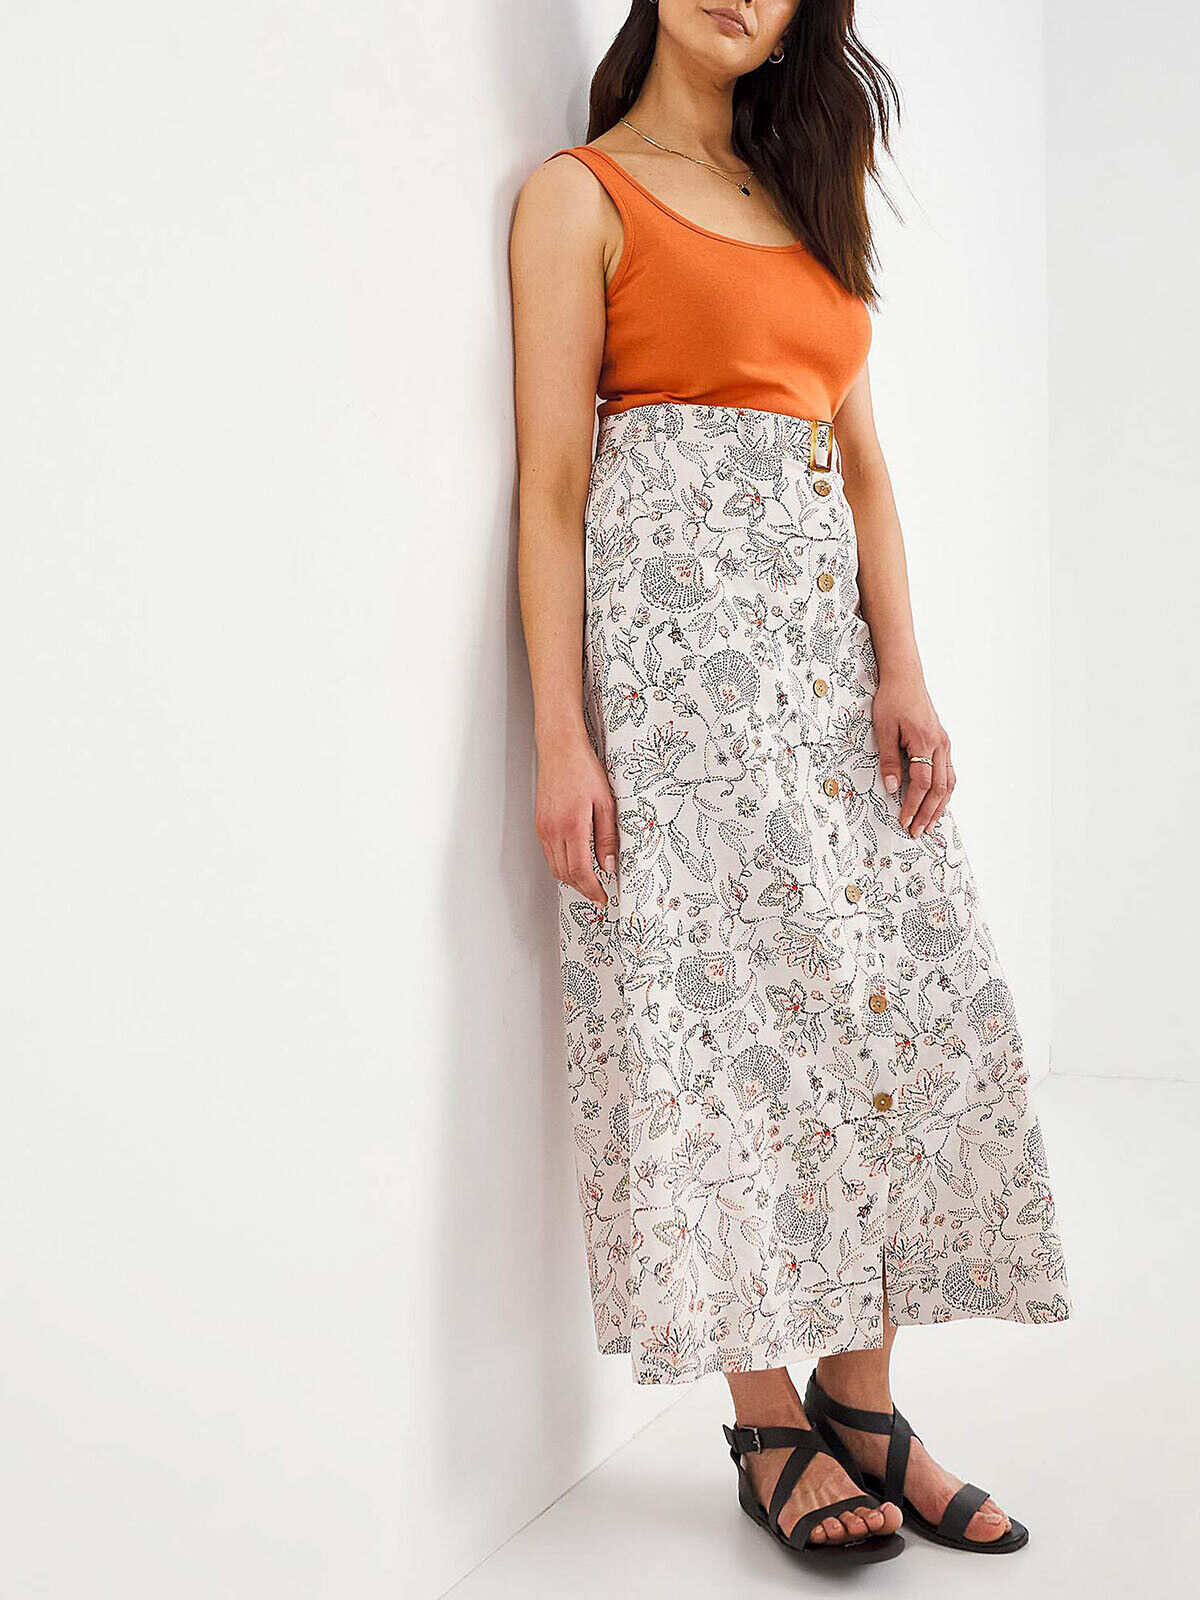 Julipa Stone Printed Linen Blend Skirt in Sizes 12, 16, 20, 26, 28, 30 RRP £36